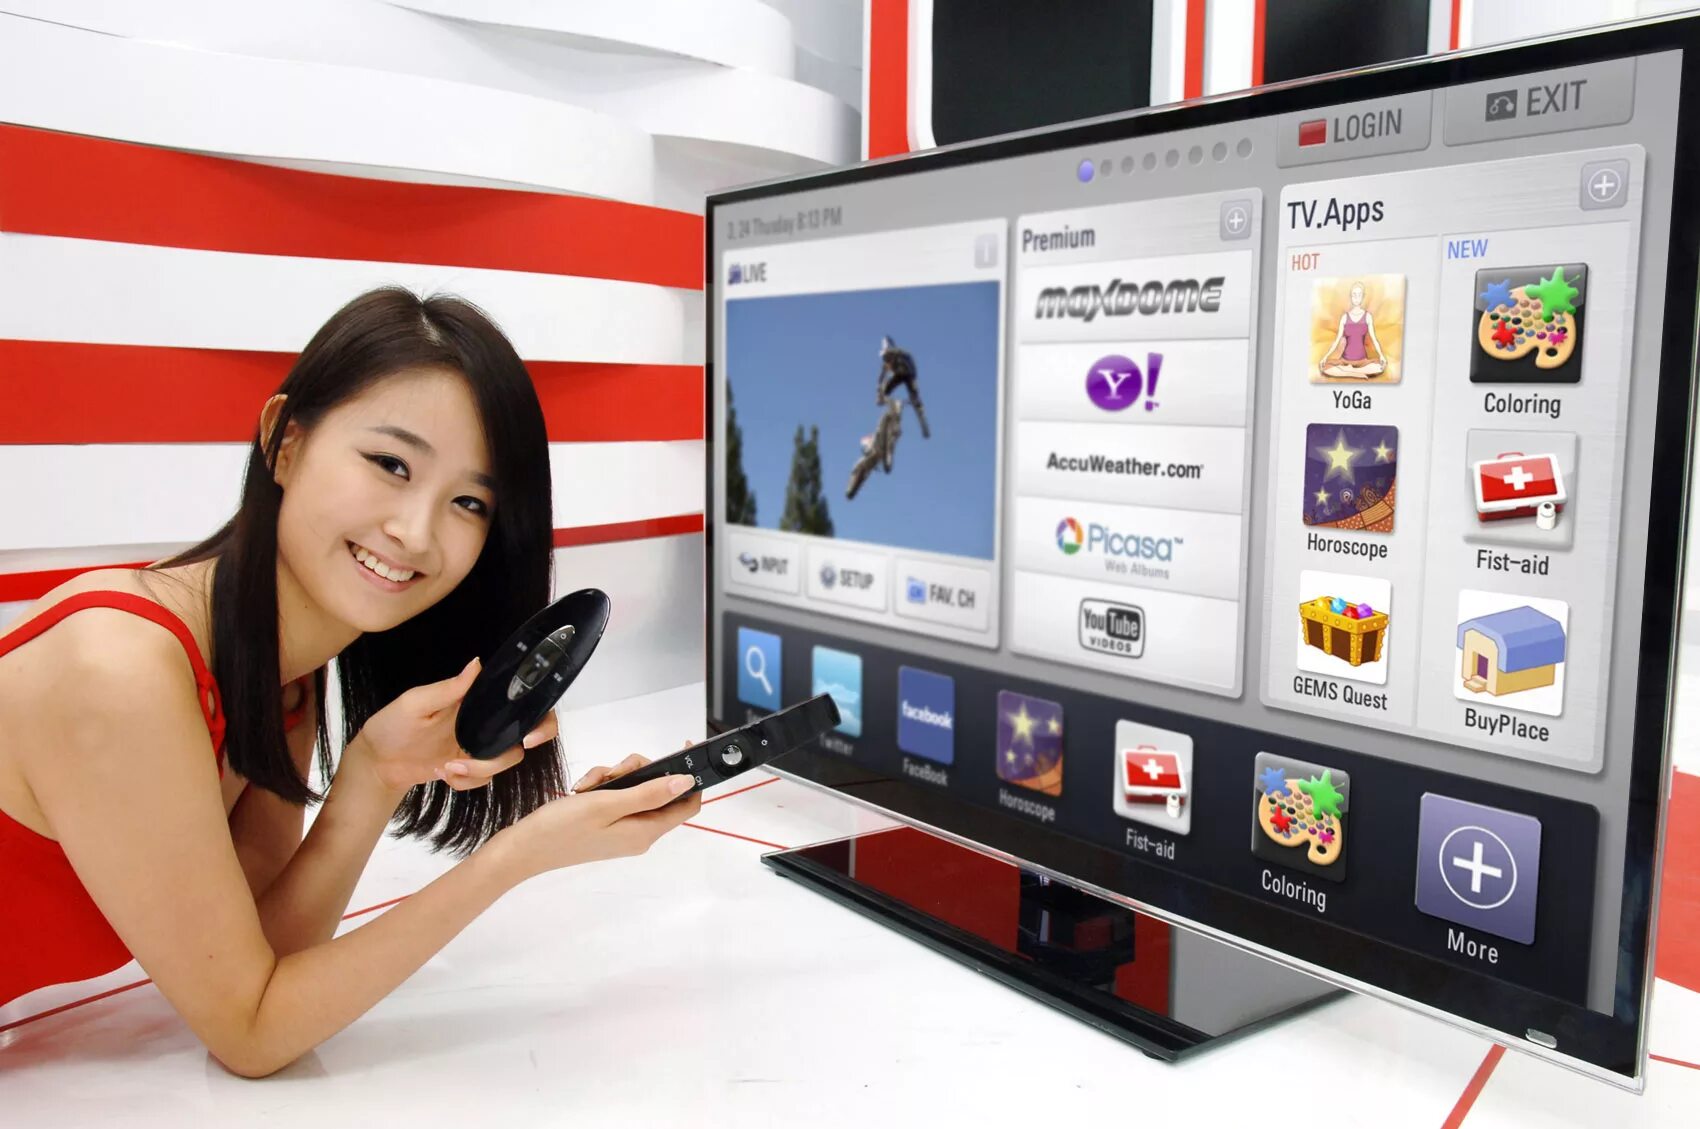 Телевизор без смарт тв к интернету. Телевизор LG Smart TV. ЛГ смарт ТВ 1. Телевизор с выходом в интернет. Современные телевизоры с интернетом.